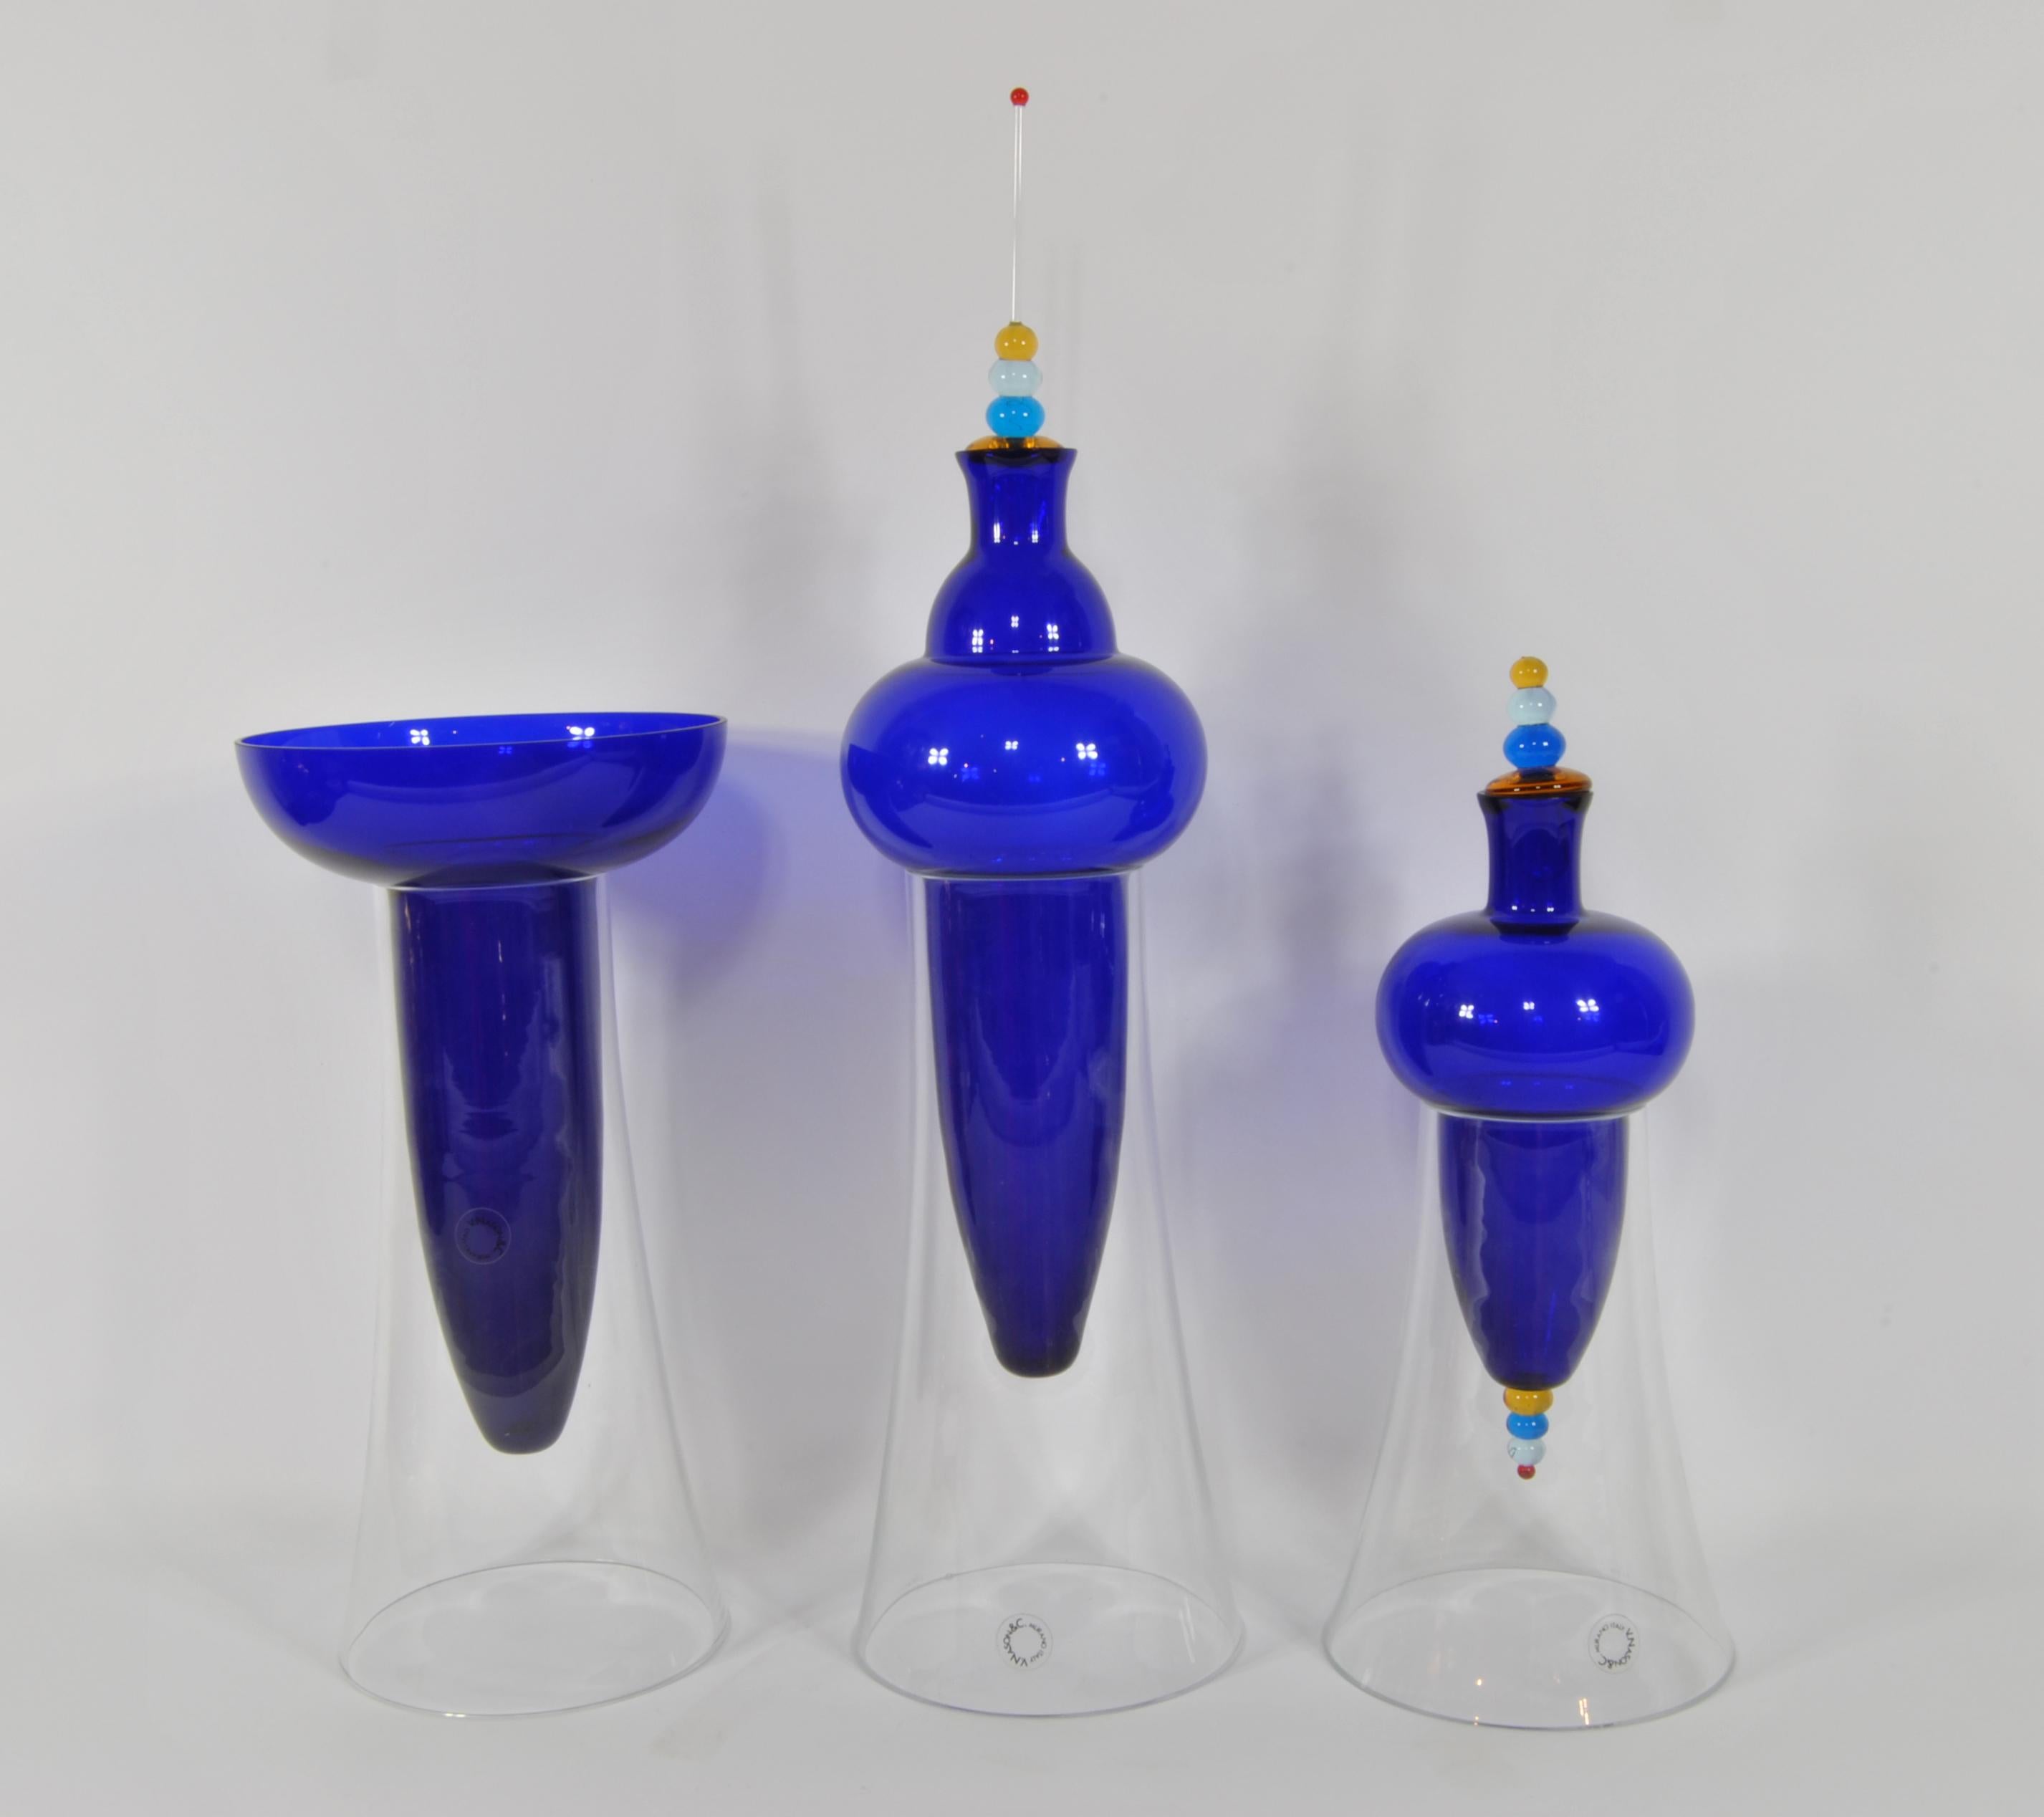 Triptyque de vases, conception Carlo Nason, production V. Nason & C..
Verre de Murano, bases en cristal.
Mesures : 1 : diamètre cm 14 x hauteur 54,
2 : diamètre cm 14 x hauteur 33,
3 : diamètre cm 14 x hauteur 35.